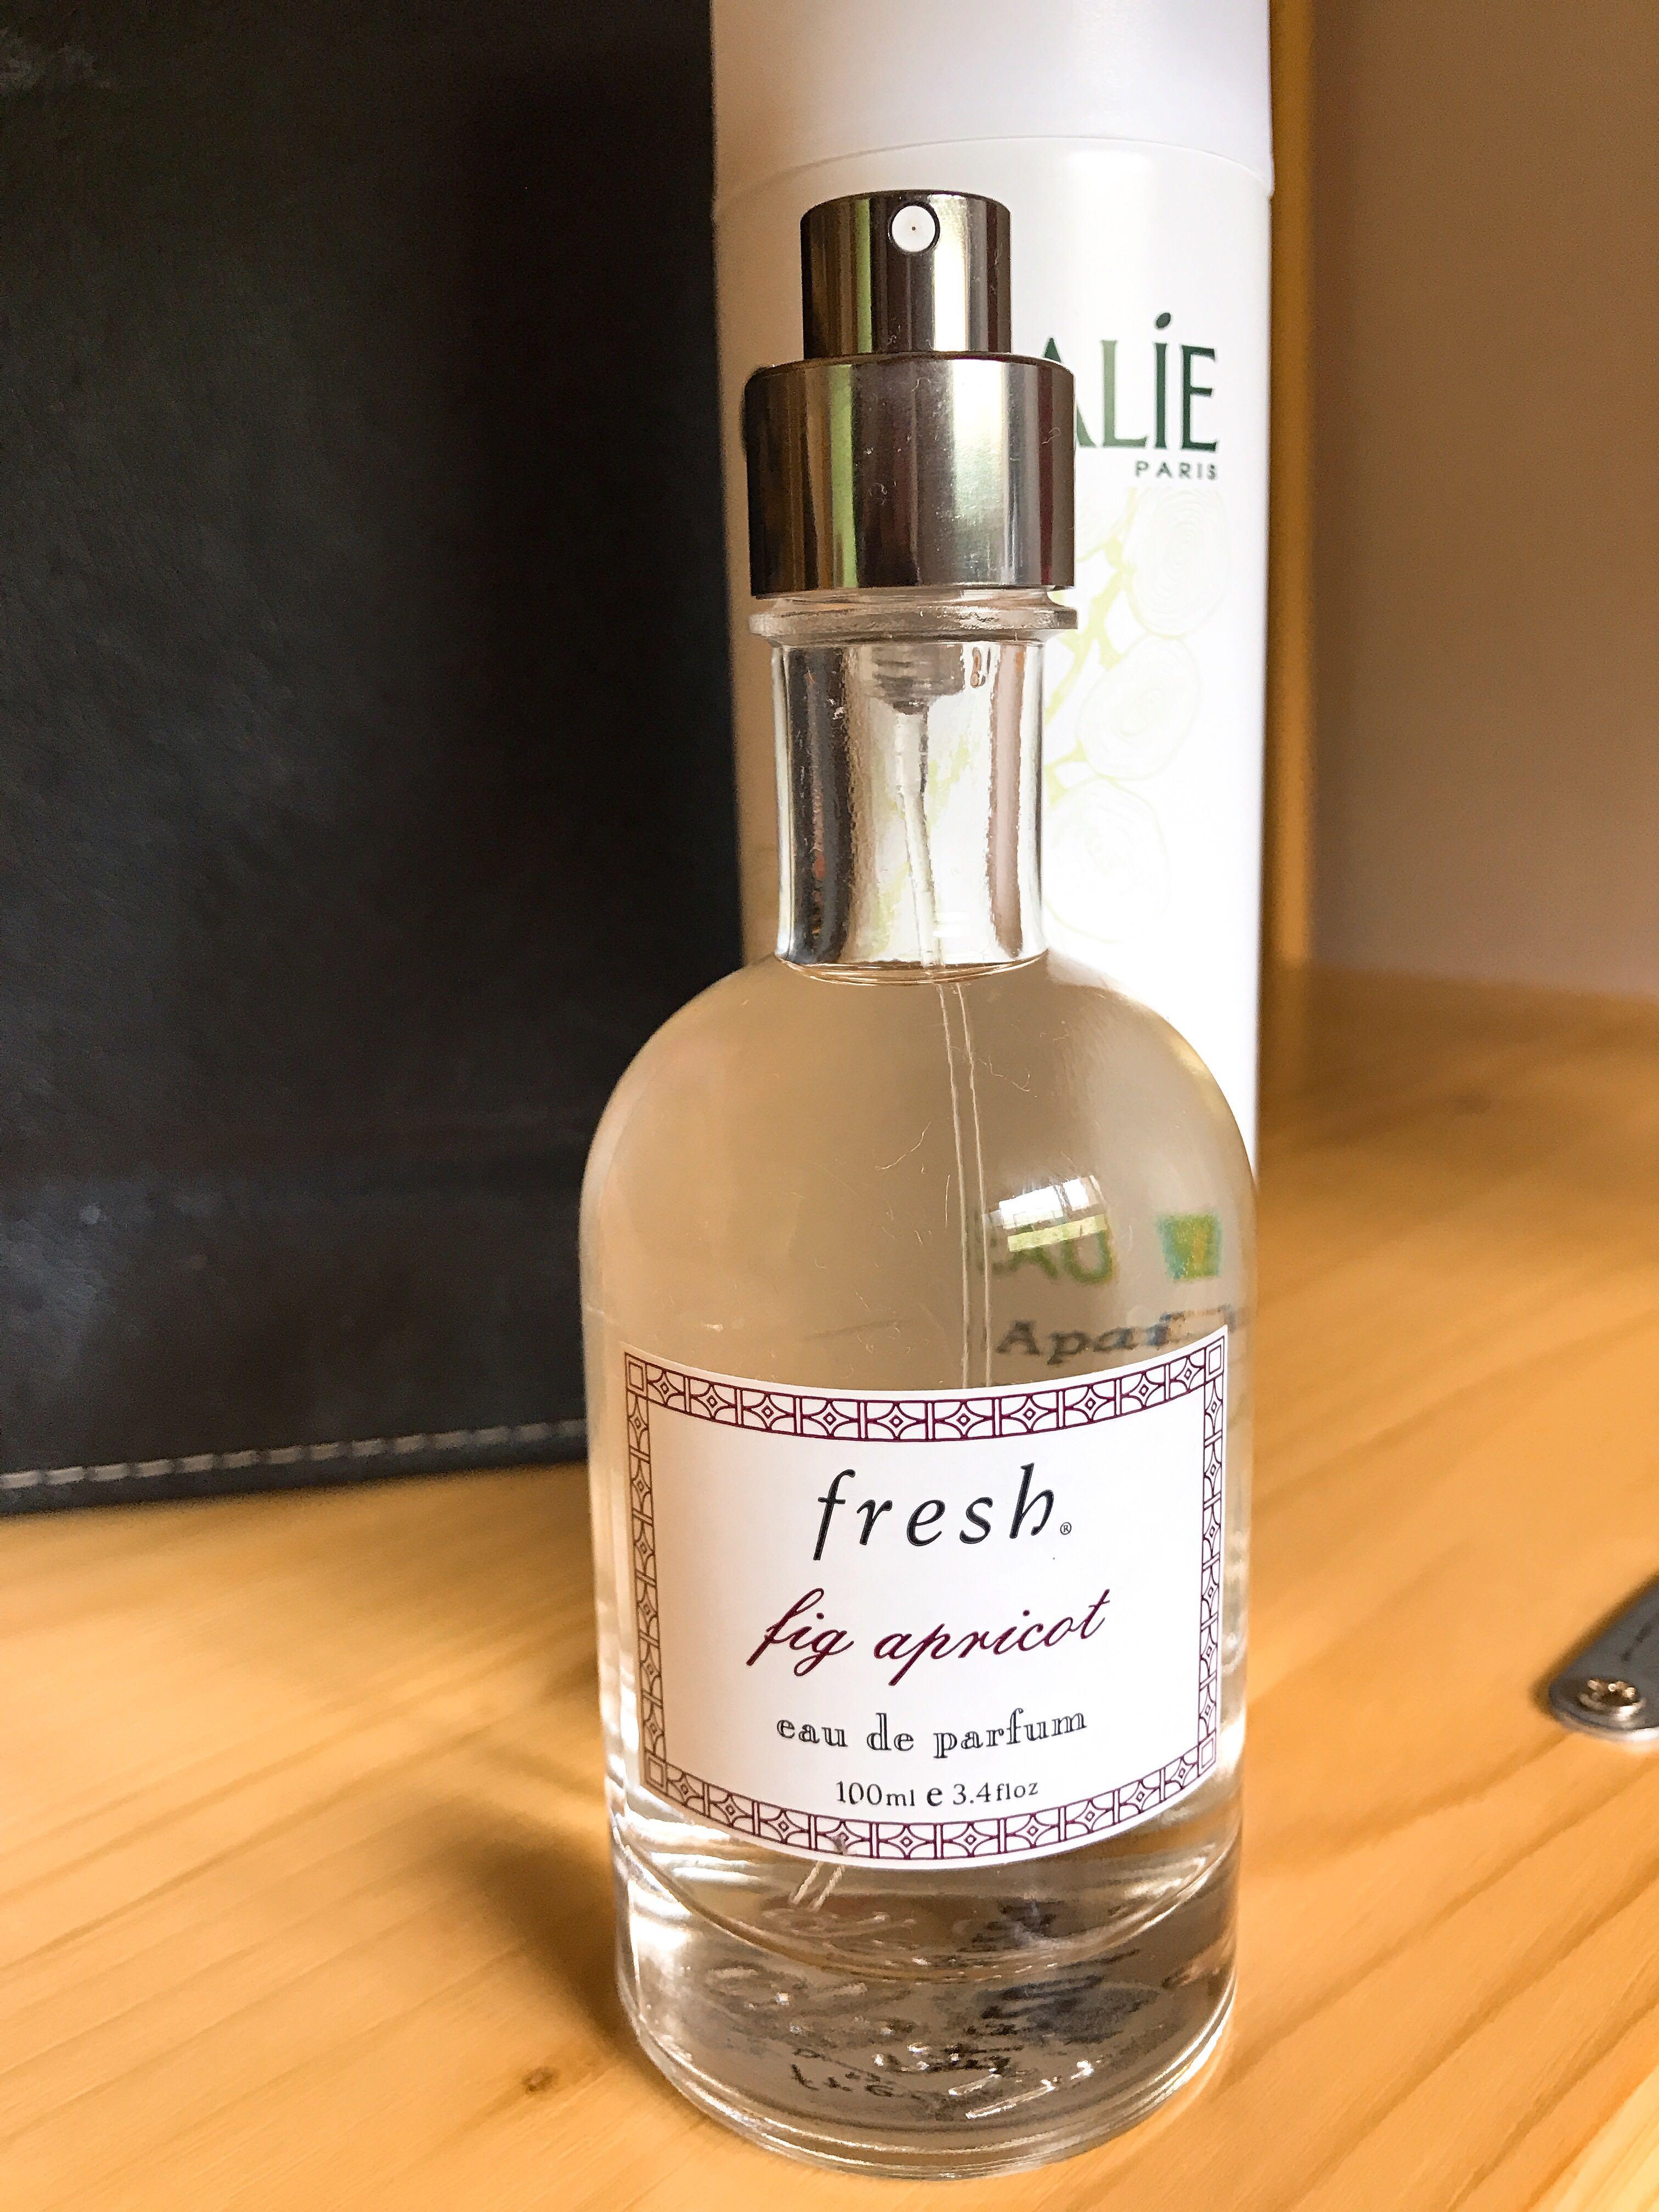 fresh fig apricot eau de parfum